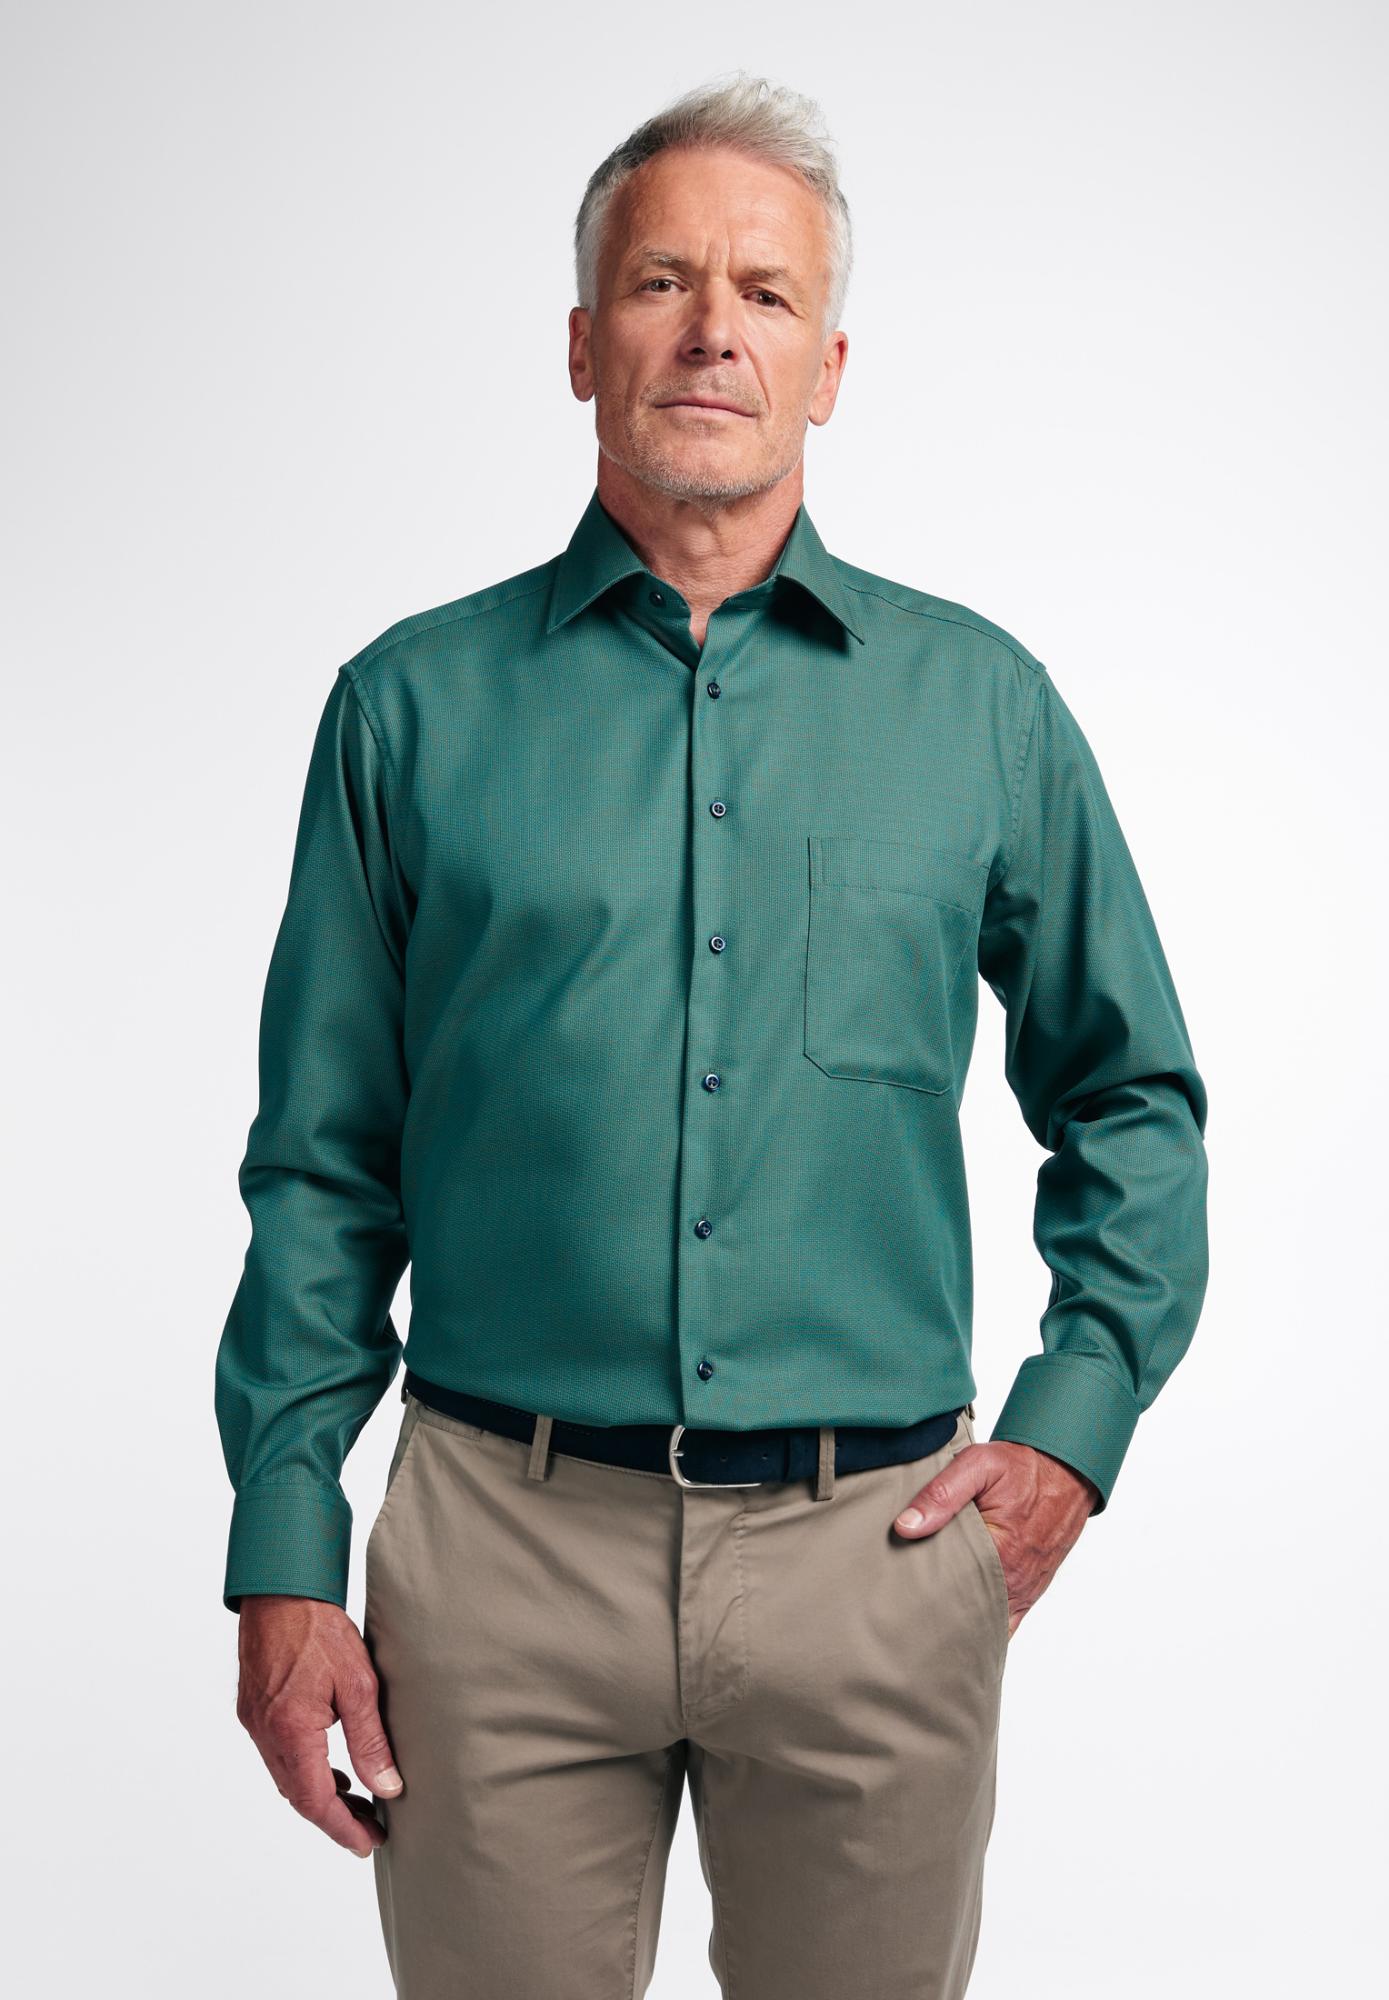 Мужская рубашка ETERNA, зеленая, цвет зеленый, размер 46 - фото 1